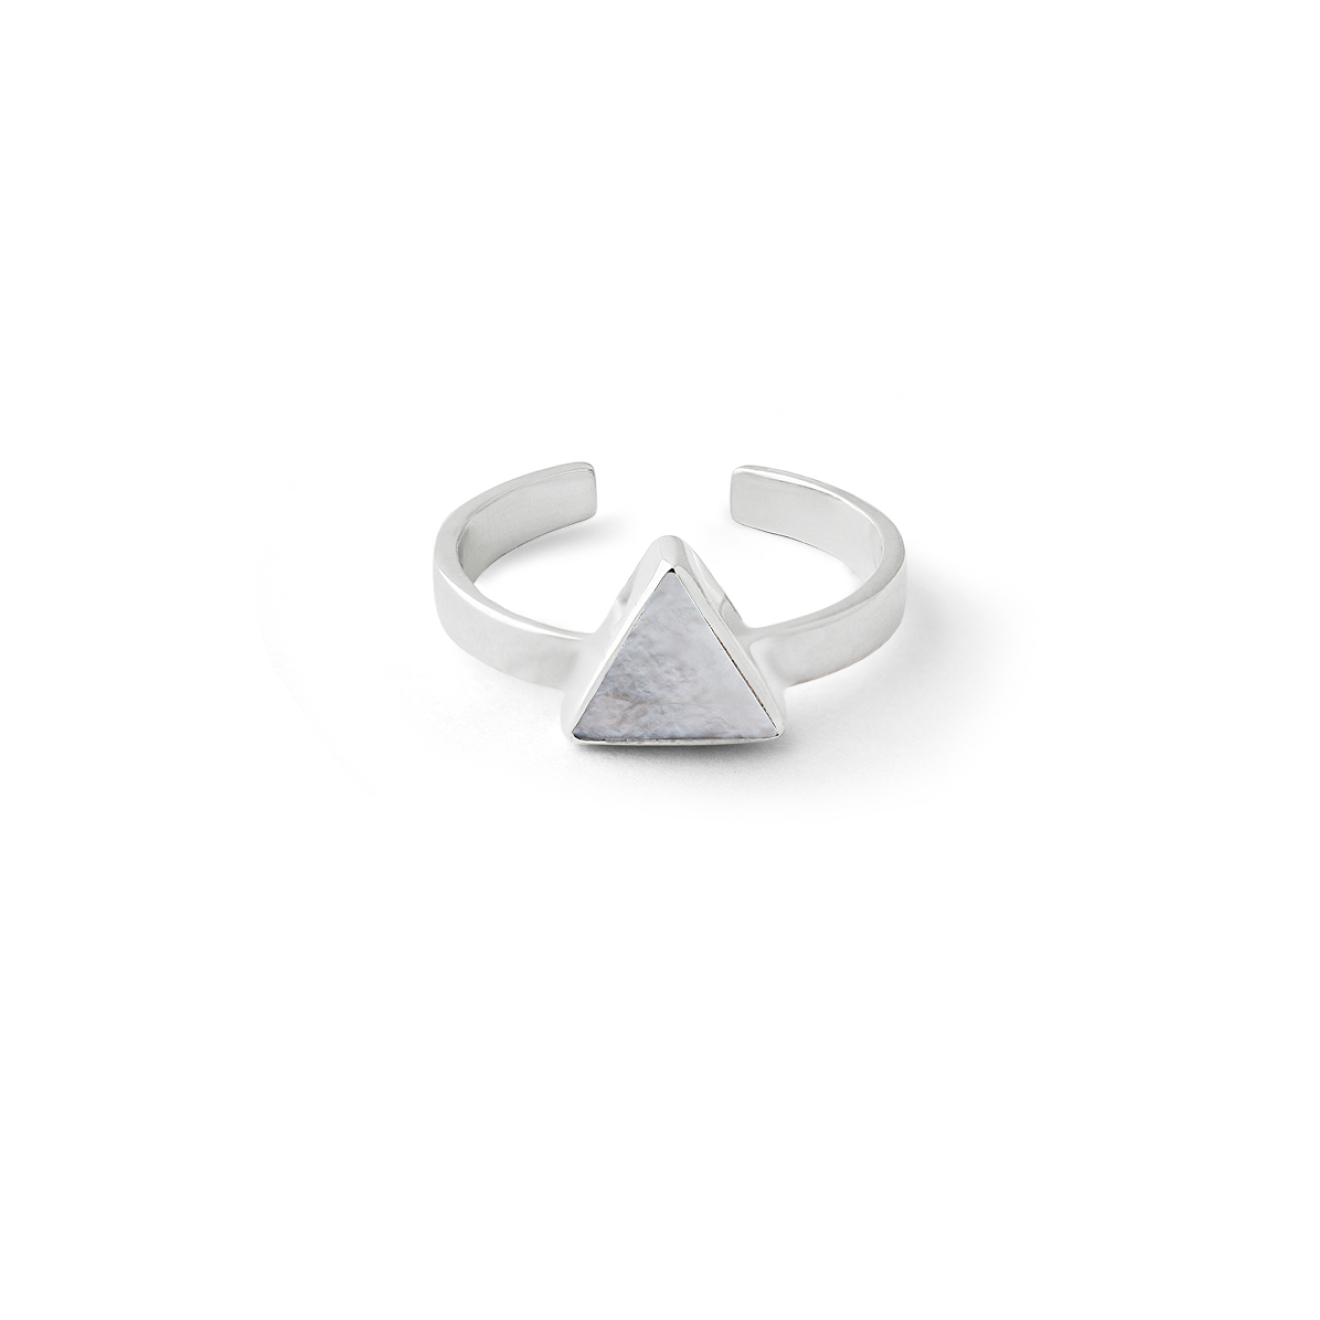 Wishes Come True Кольцо-треугольник из серебра со светлым плоским перламутром